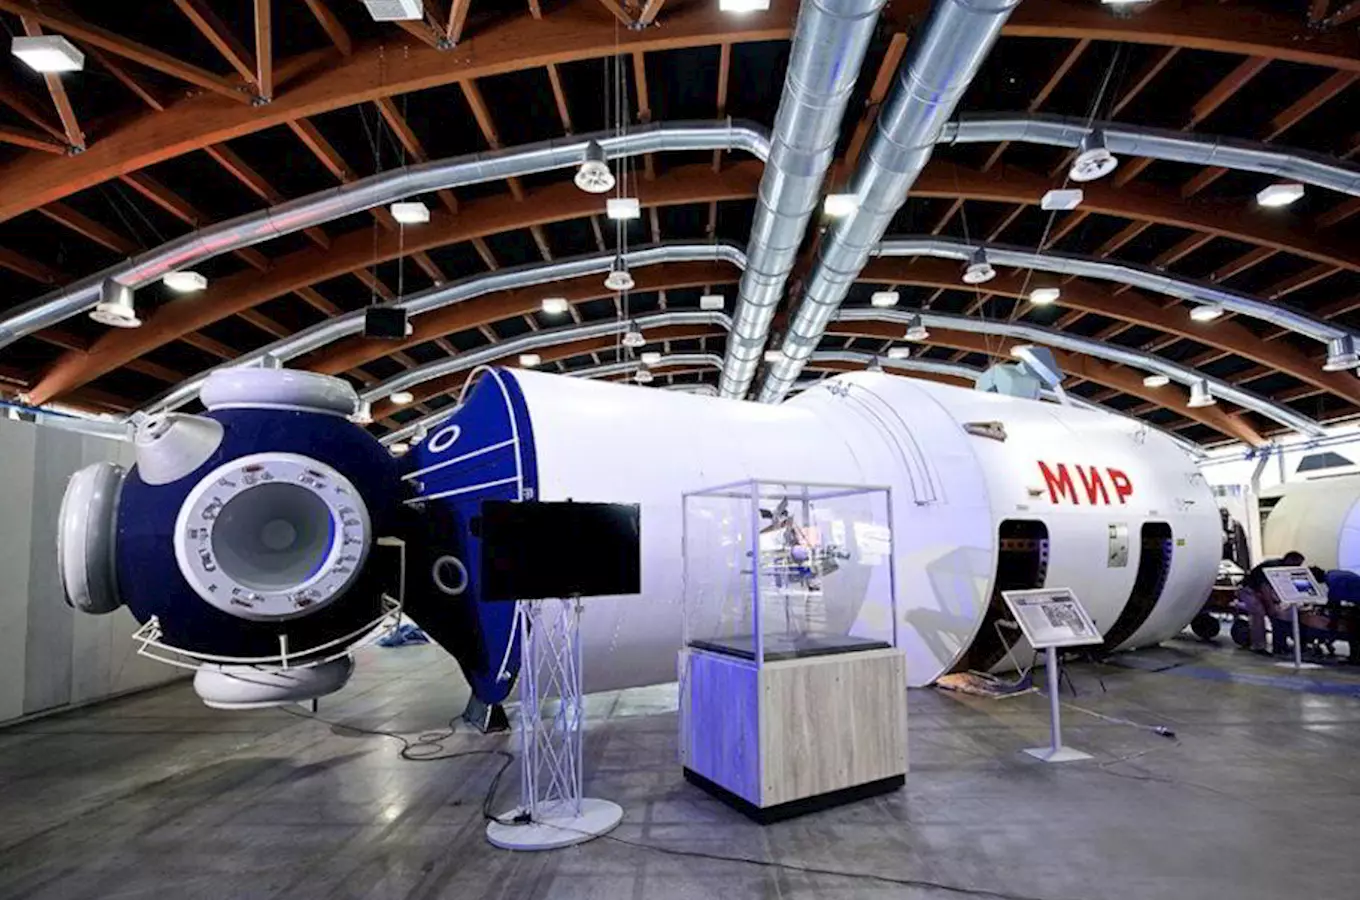 Výstava Gateway to Space odpočítává poslední dny svého otevření v ČR